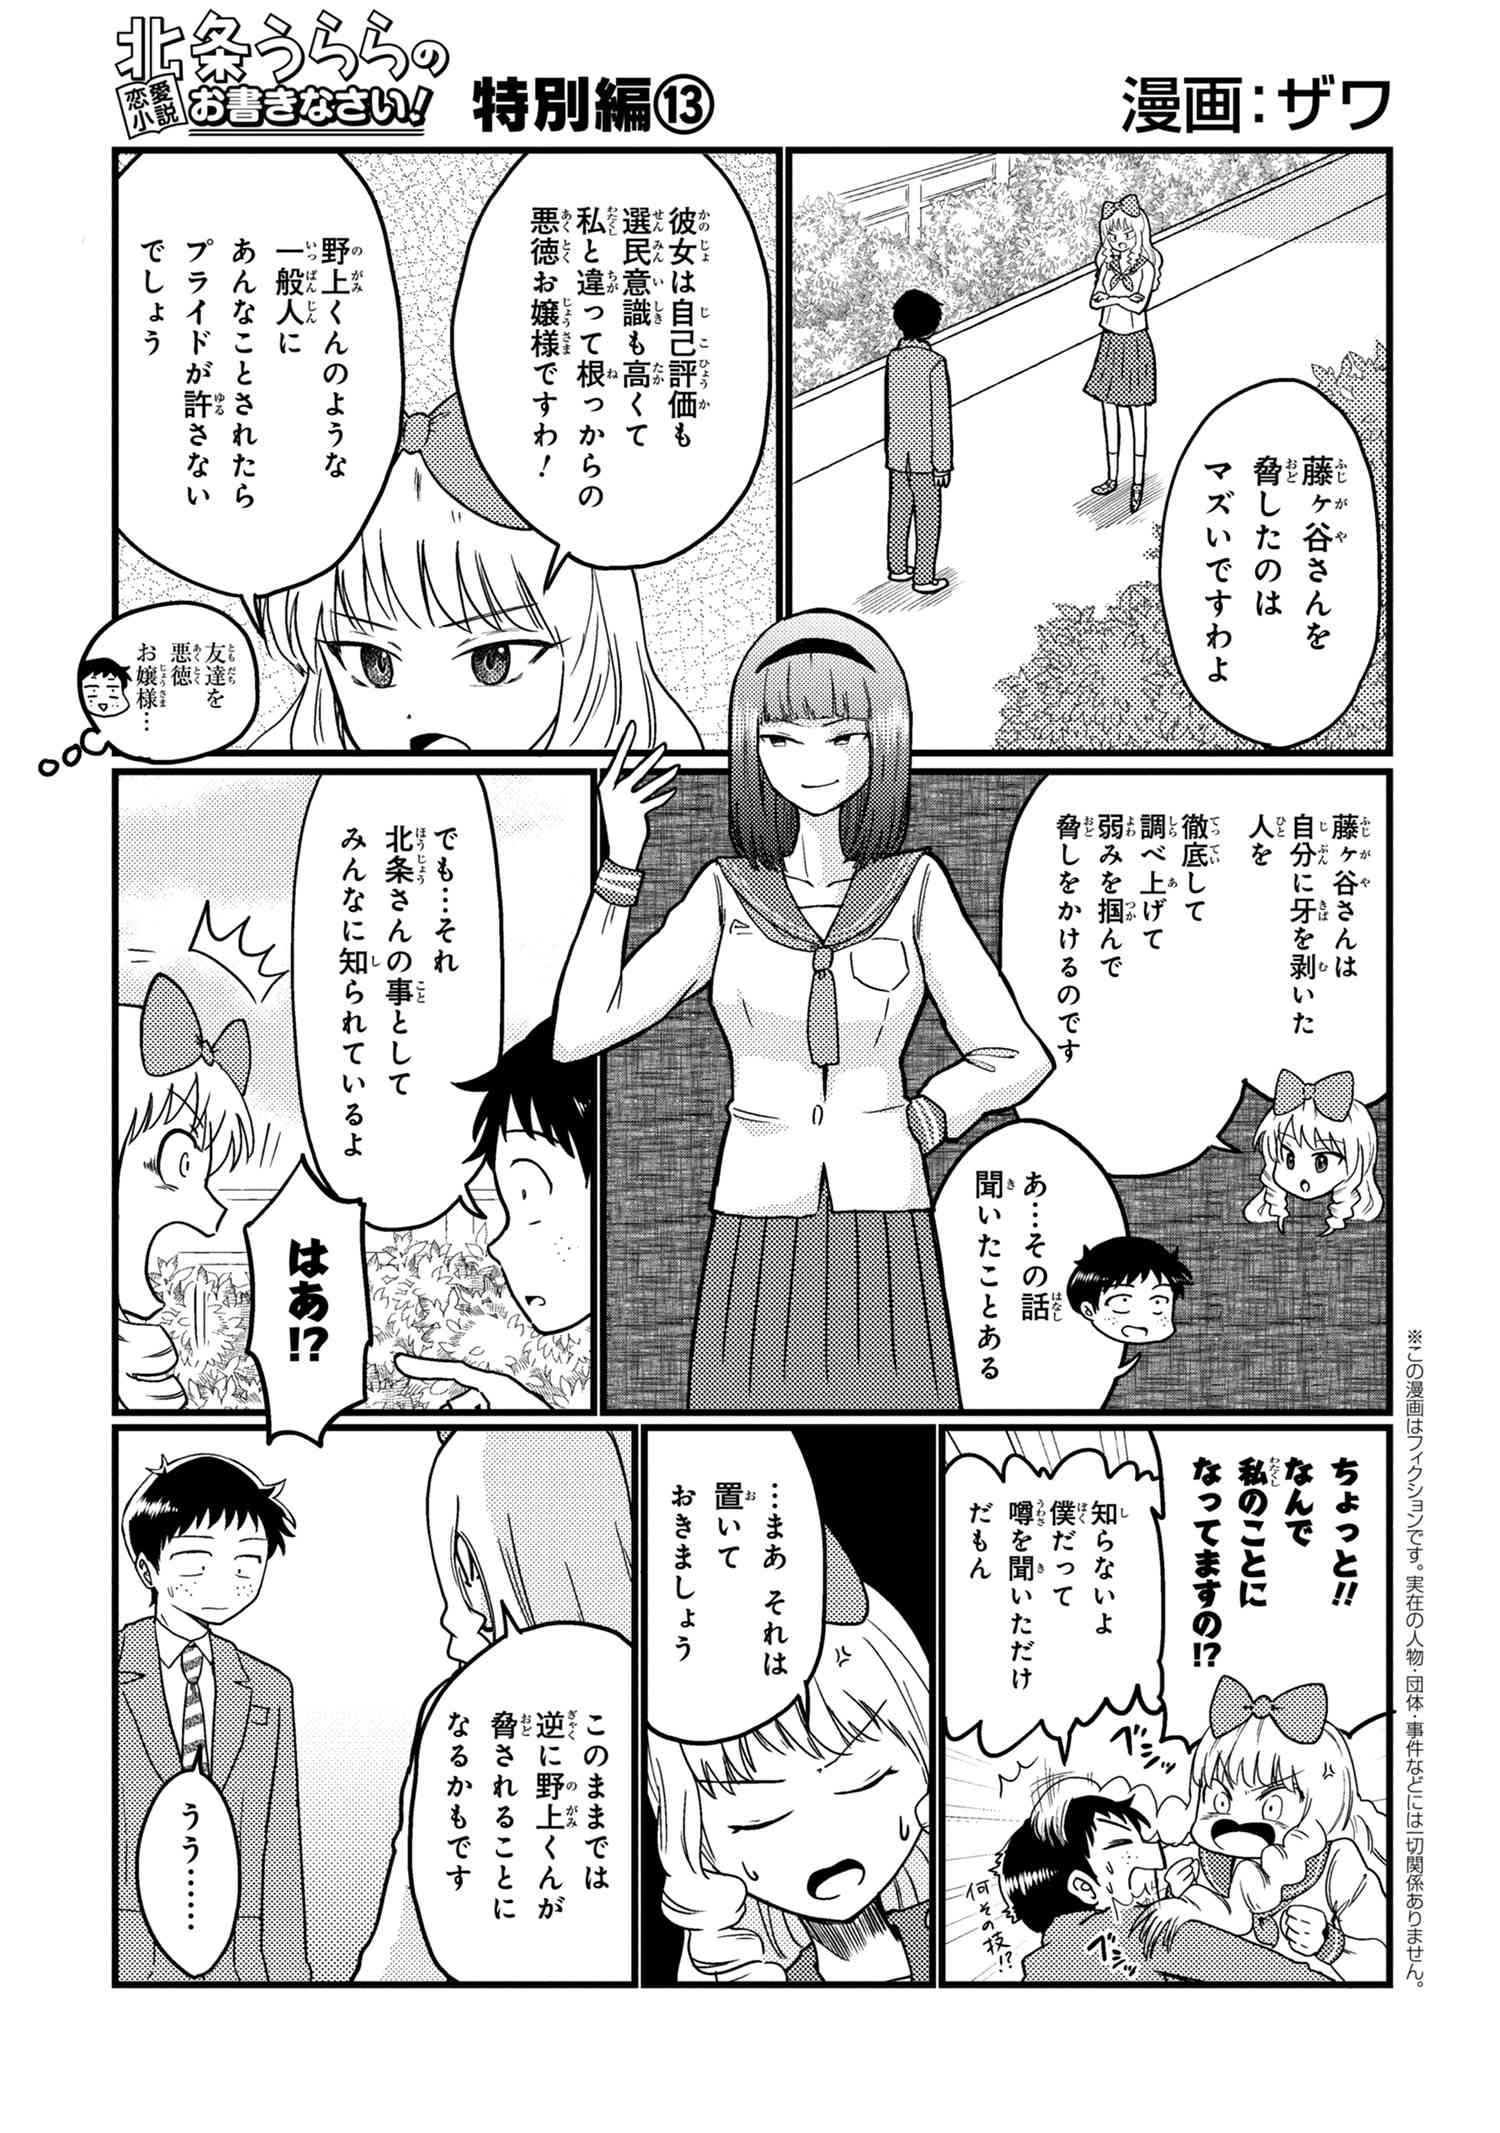 Houjou Urara no renai shousetsu o kaki nasai! - Chapter 13 - Page 1